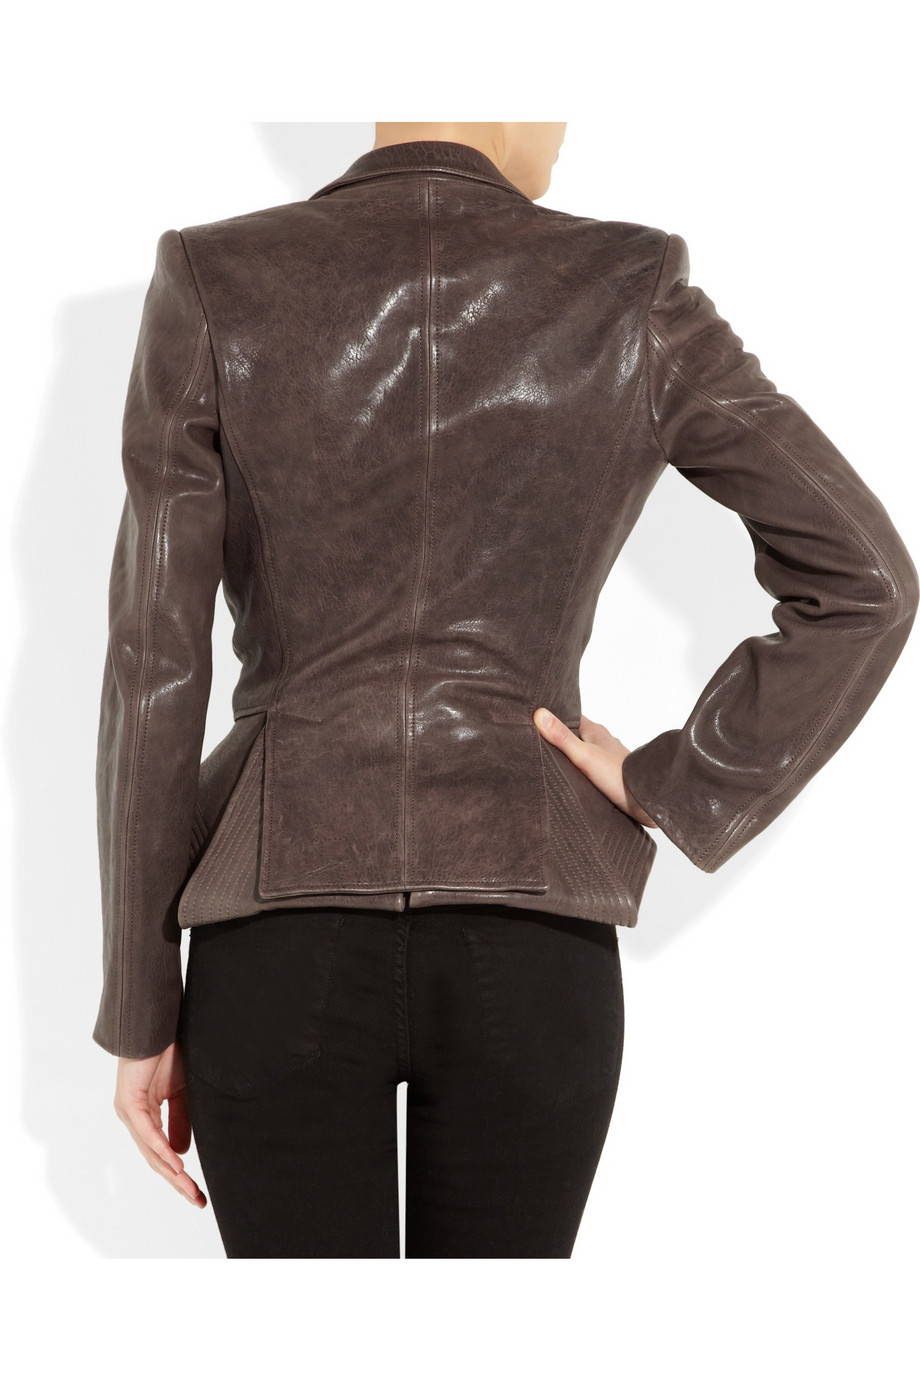 Lyst - Haider ackermann Leather Peplum Jacket in Brown